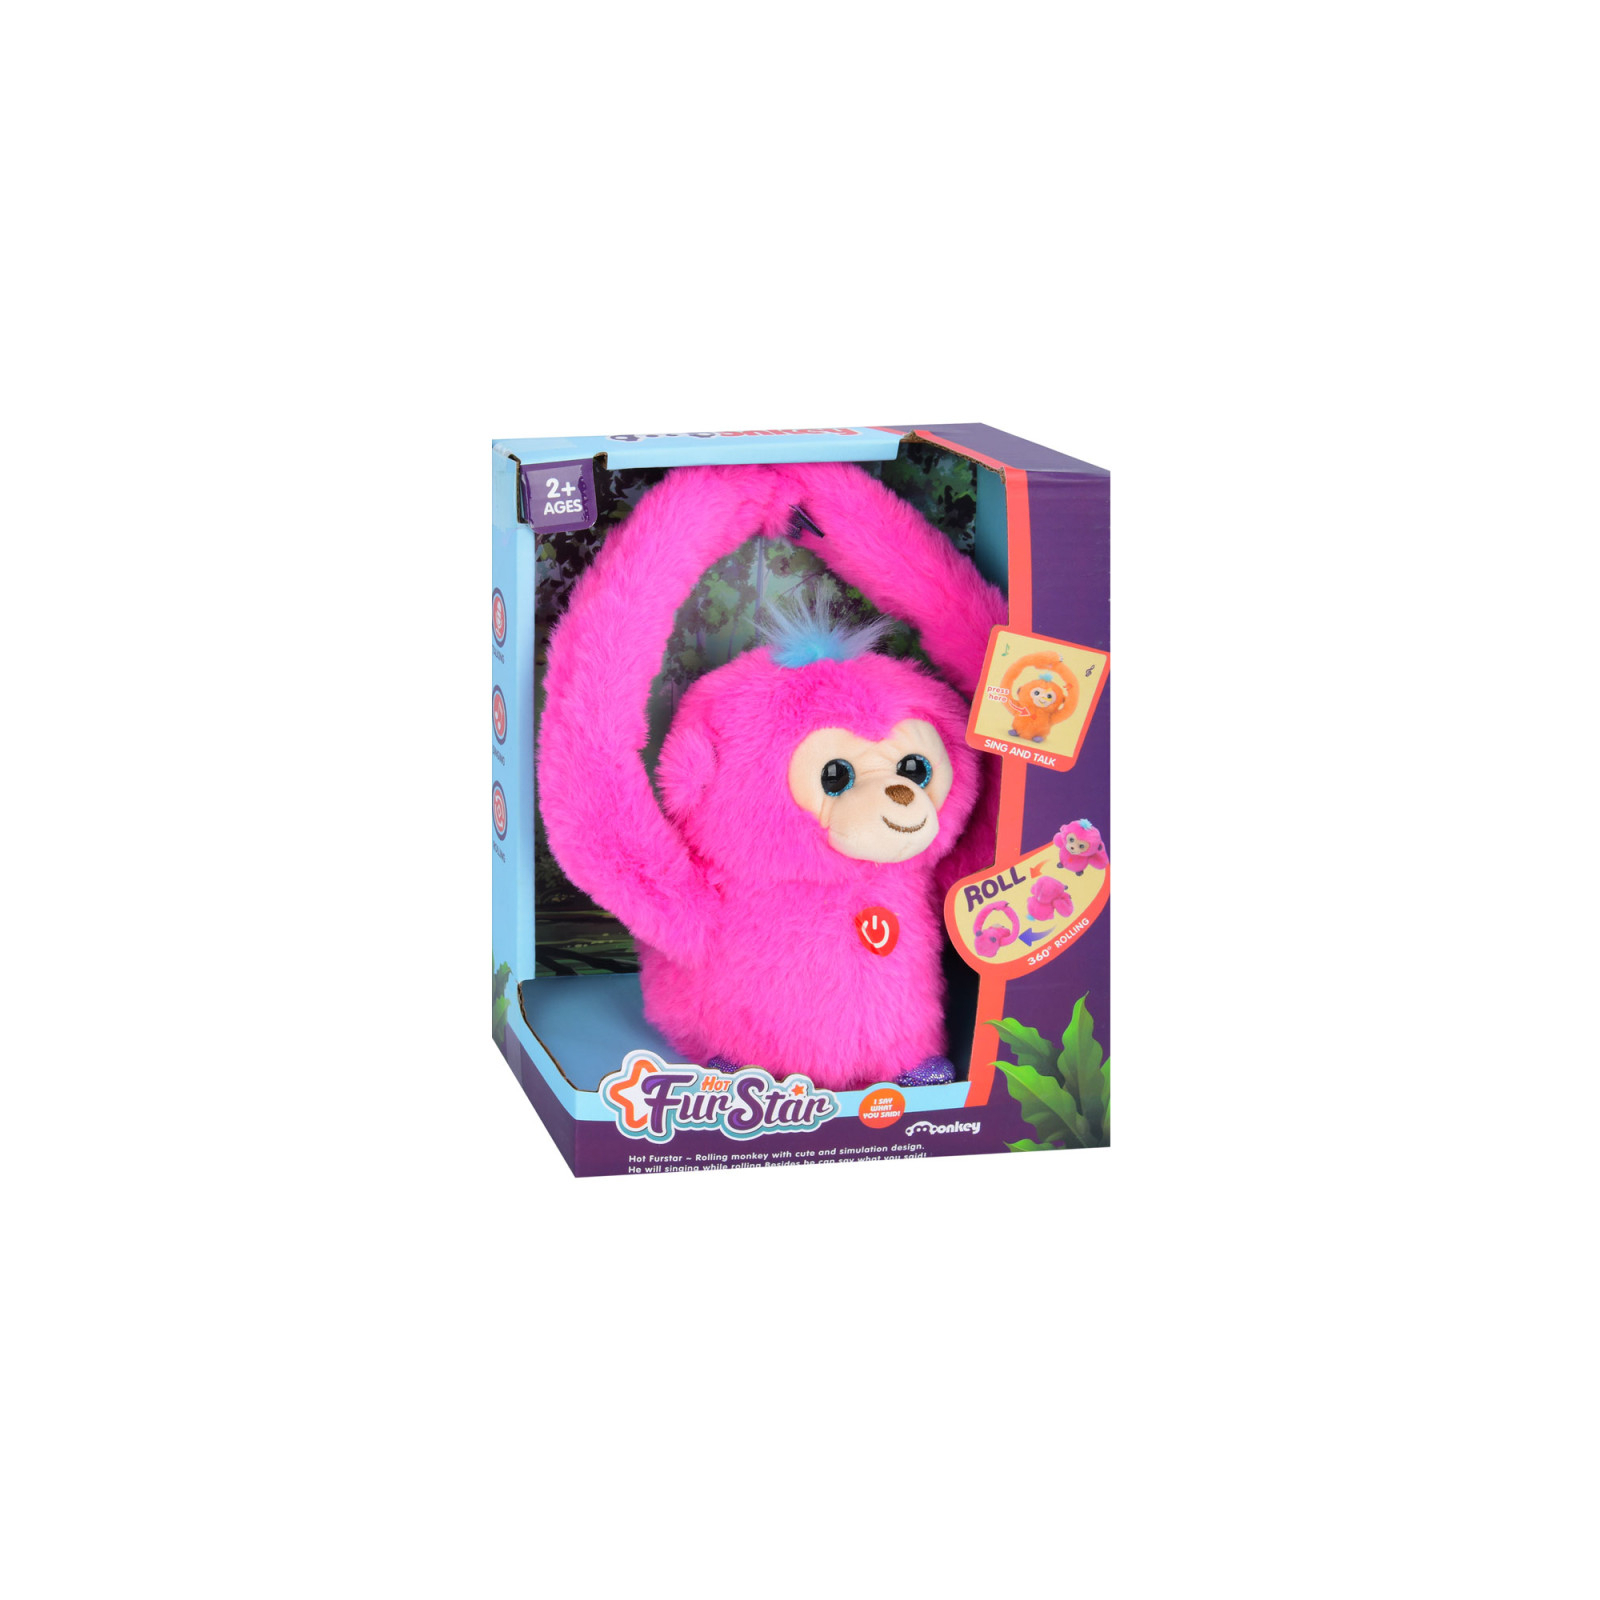 Интерактивная игрушка Bambi Обезьяна Розовая (MP 2304 pink) изображение 3